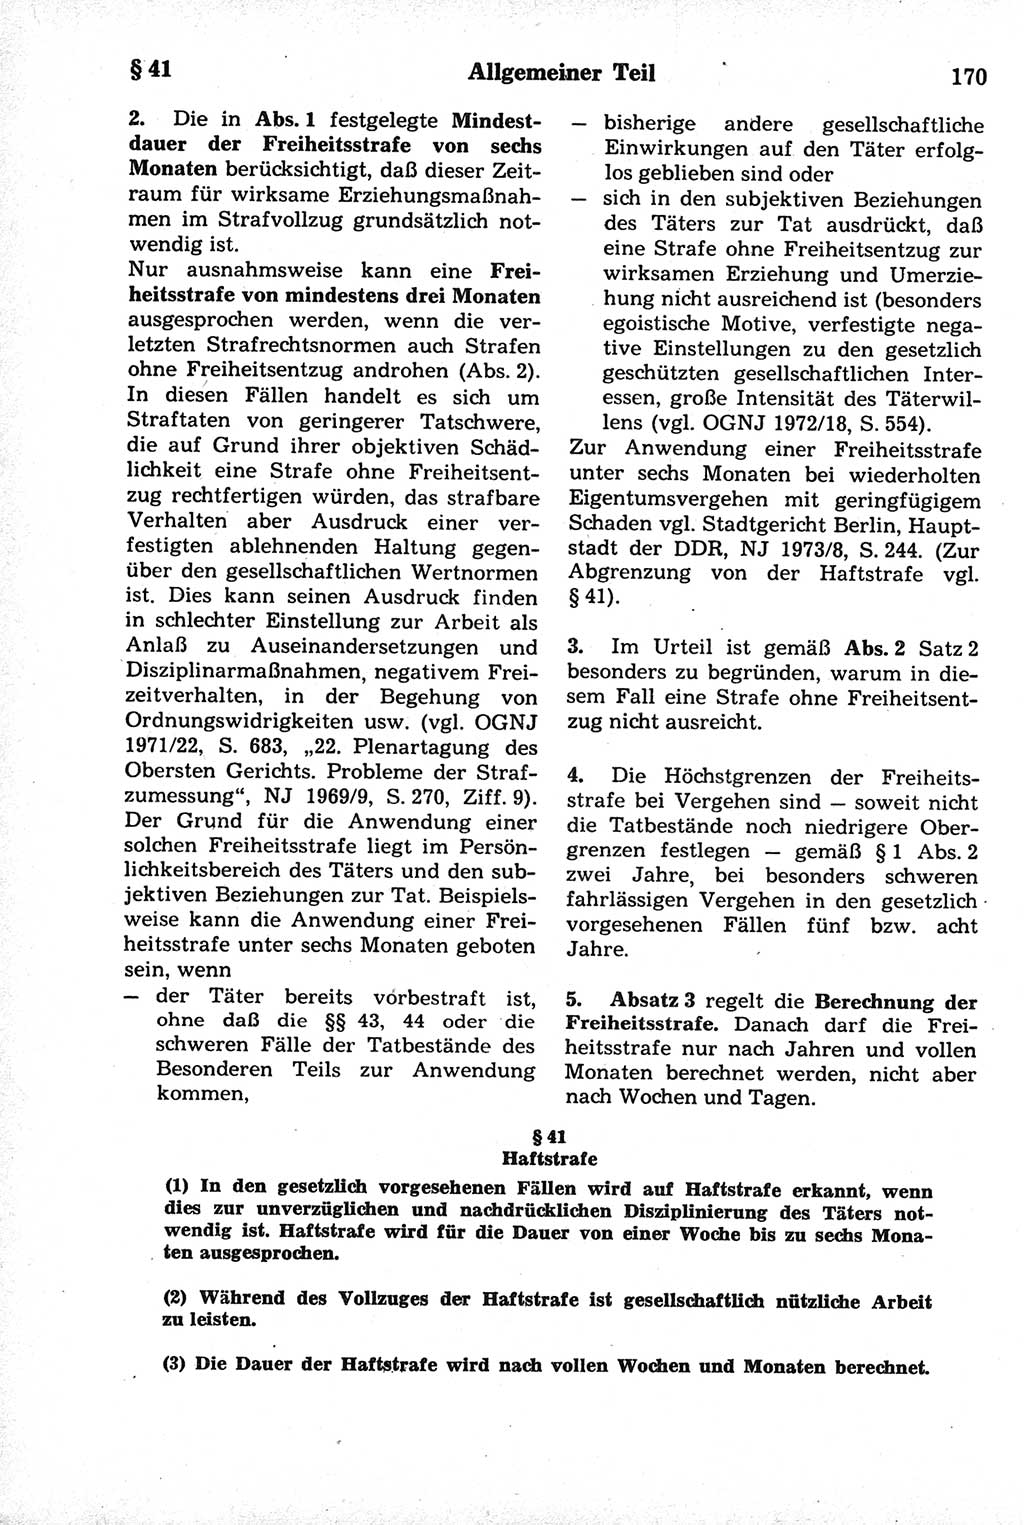 Strafrecht der Deutschen Demokratischen Republik (DDR), Kommentar zum Strafgesetzbuch (StGB) 1981, Seite 170 (Strafr. DDR Komm. StGB 1981, S. 170)